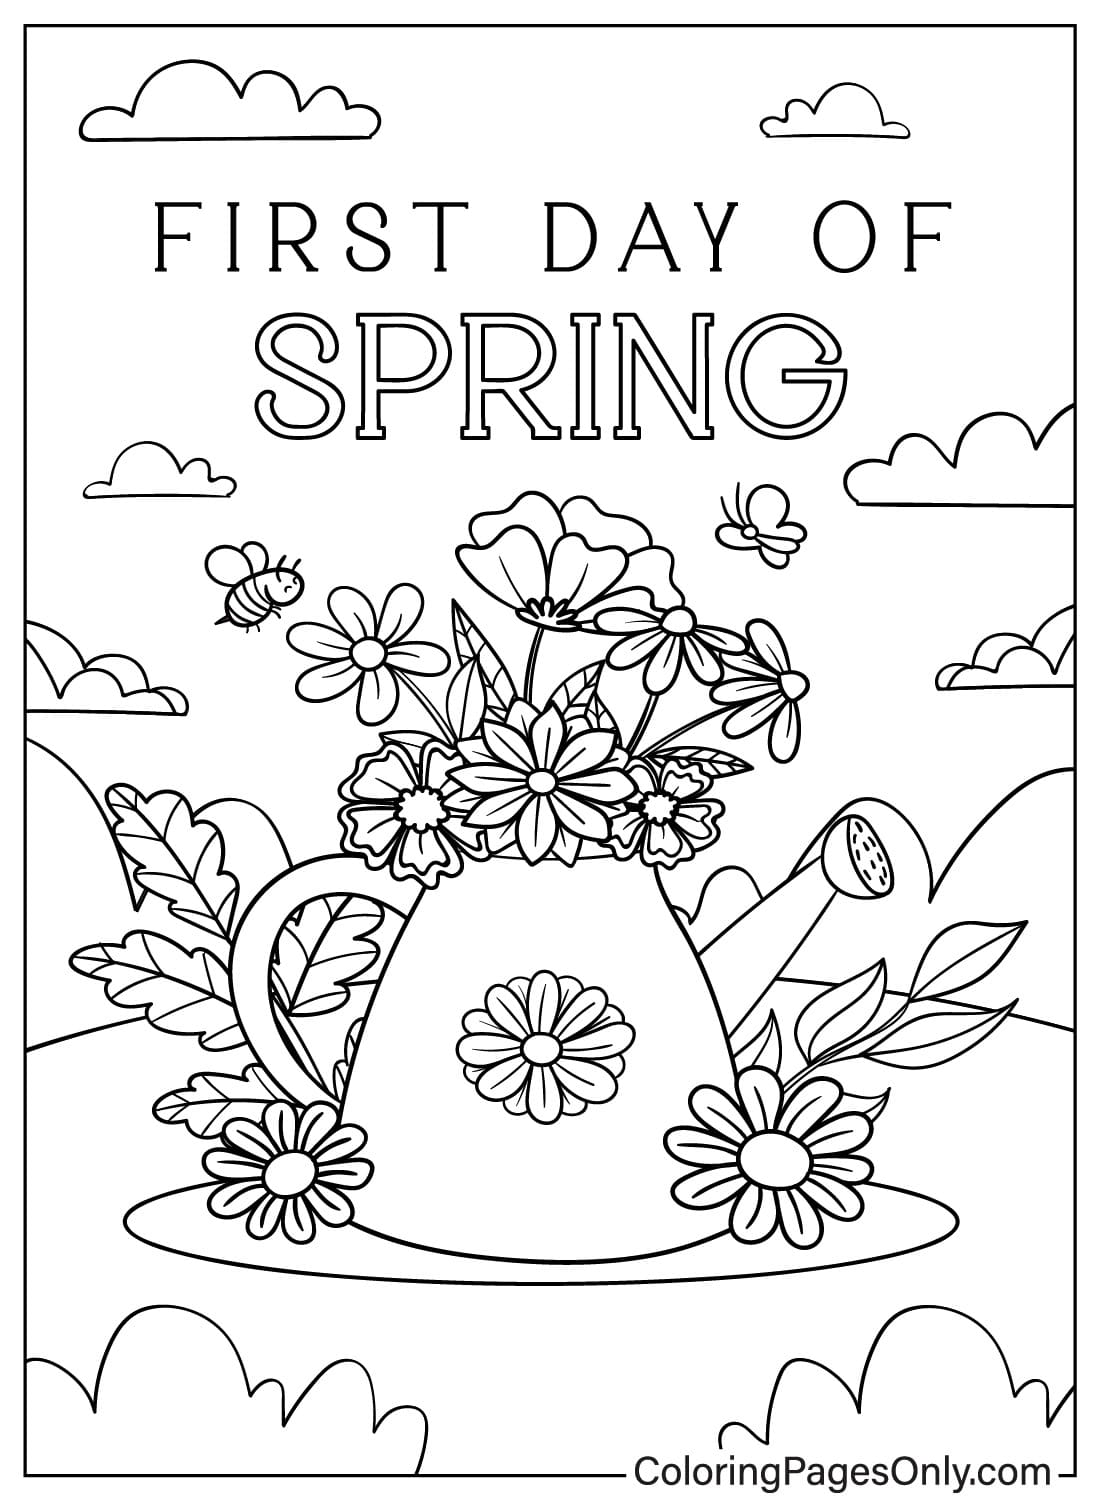 Erster Frühlingstag zum Ausmalen vom ersten Frühlingstag